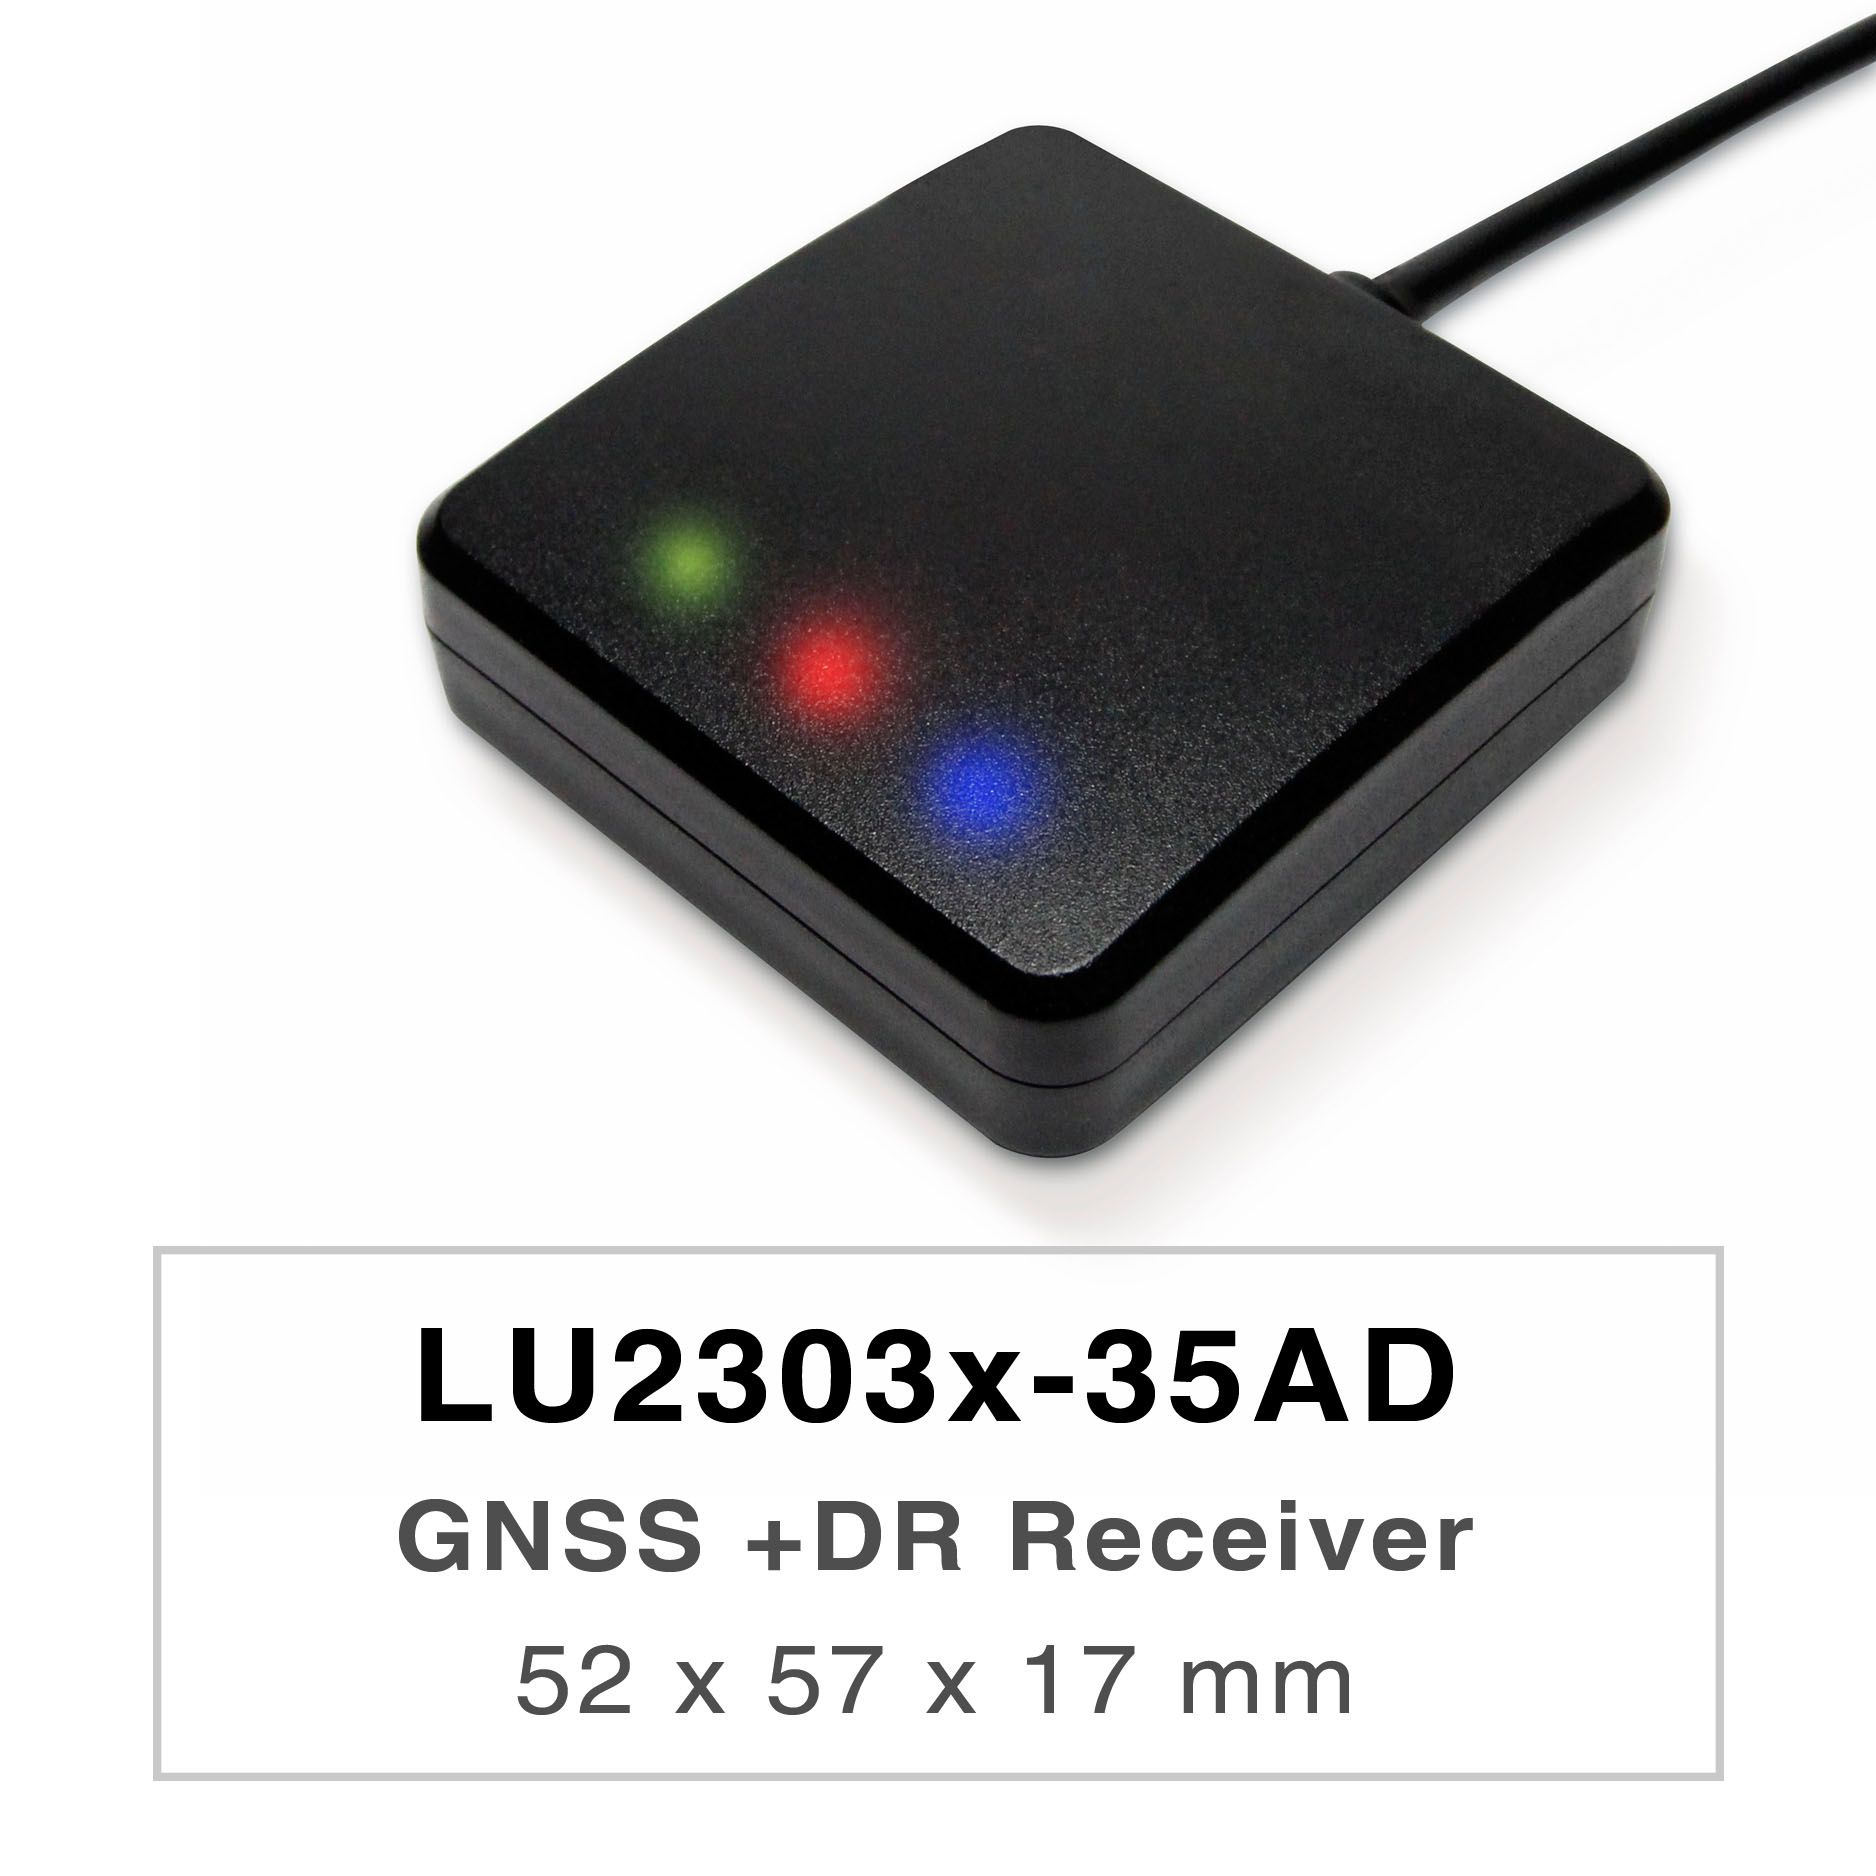 Los productos de la serie LU2303x-35AD son receptores de GNSS UDR (Untethered Dead Reckoning) de doble banda de alto rendimiento (también conocidos como ratón GNSS) que son capaces de rastrear todos los sistemas de navegación civil globales (GPS, GLONASS, BDS, GALILEO, QZSS). El ratón GNSS adquirirá simultáneamente las señales L1 y L5, proporcionando una mayor precisión de posición.